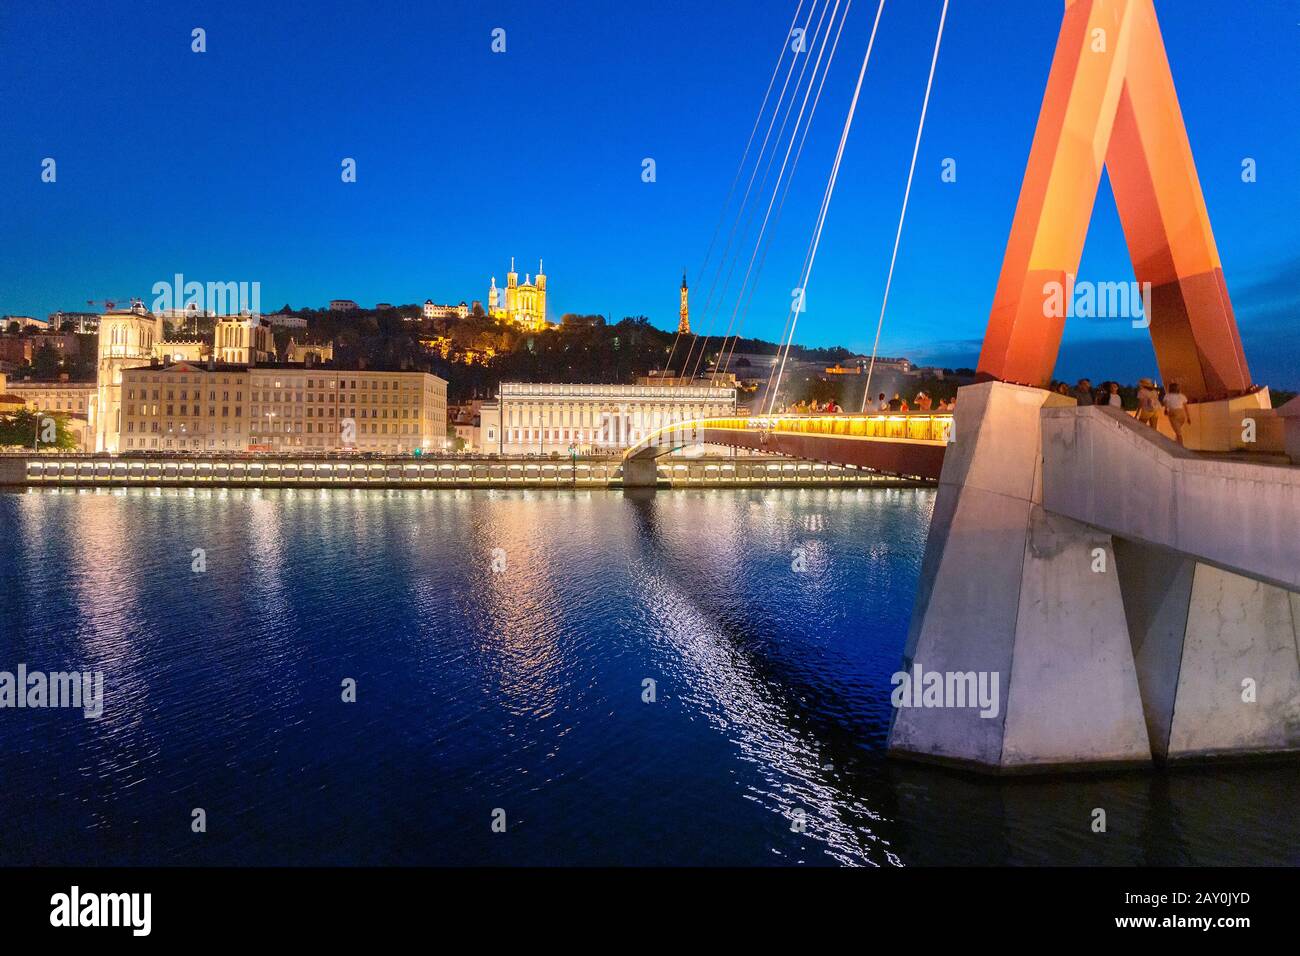 23. Juli 2019, Lyon, Frankreich: Stadtbild der Nacht von Lyon mit beleuchtetem Courthouse und roter Fußgängerbrücke über den Fluss Saone. Panorama-Blau-Stundenlandschaft Stockfoto